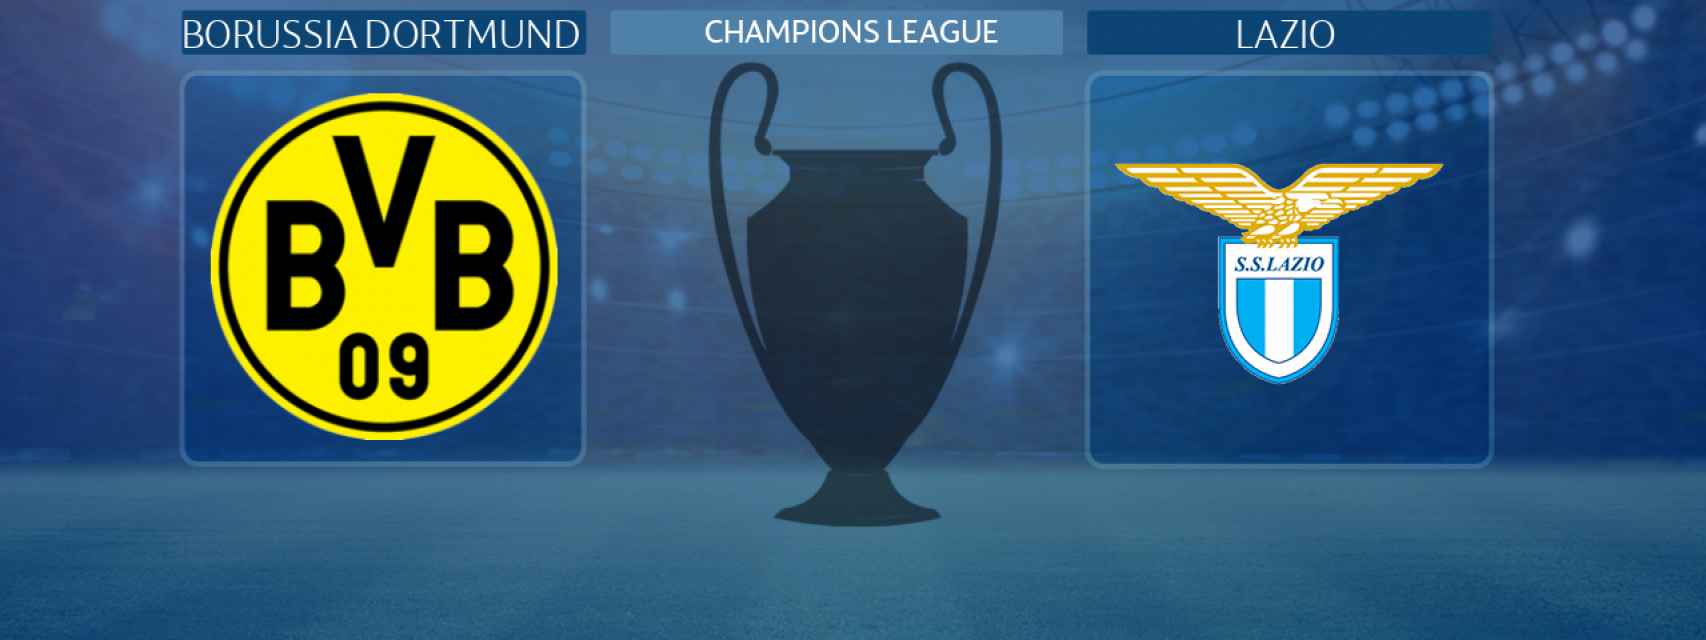 Borussia Dortmund - Lazio, partido de la Champions League